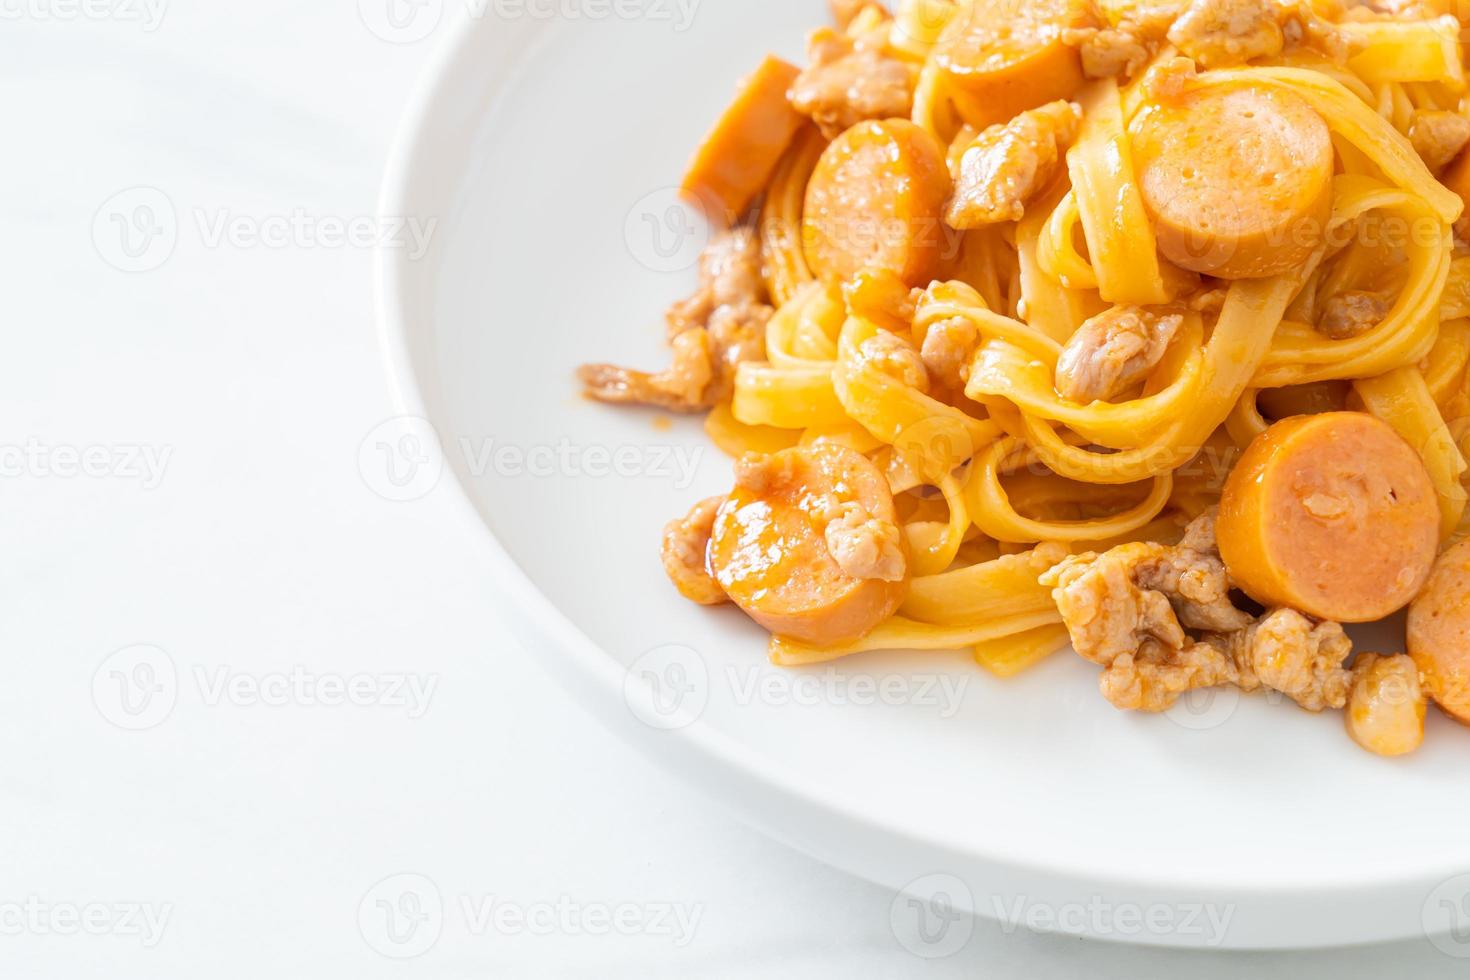 espaguetis pasta salchicha y carne de cerdo picada foto